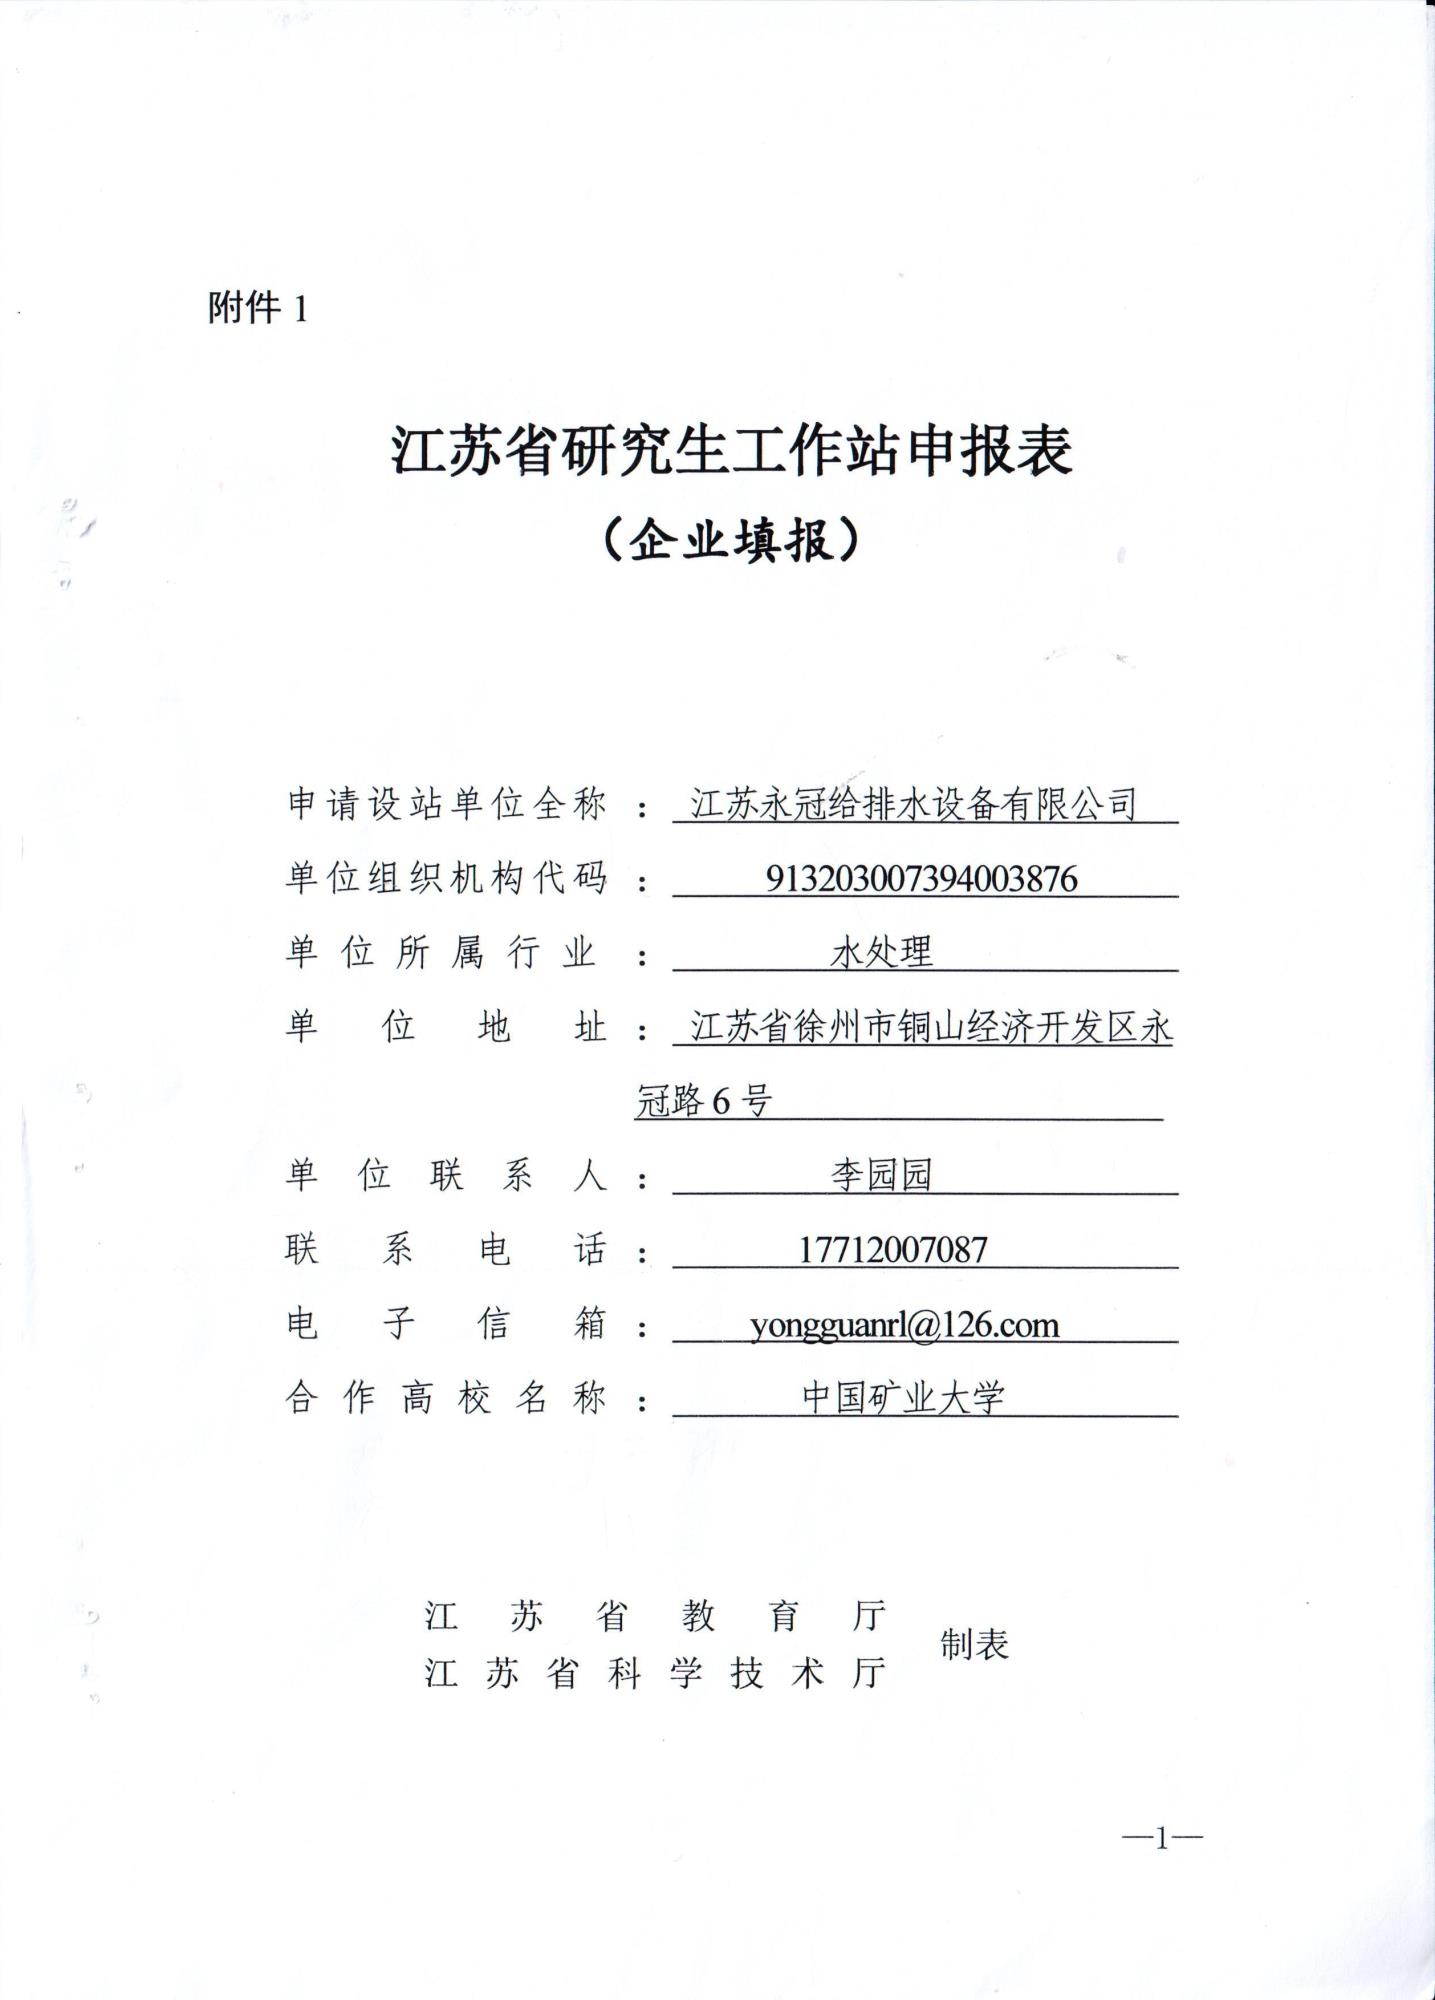 江苏永冠给排水设备有限公司申报江苏省研究生工作站公示